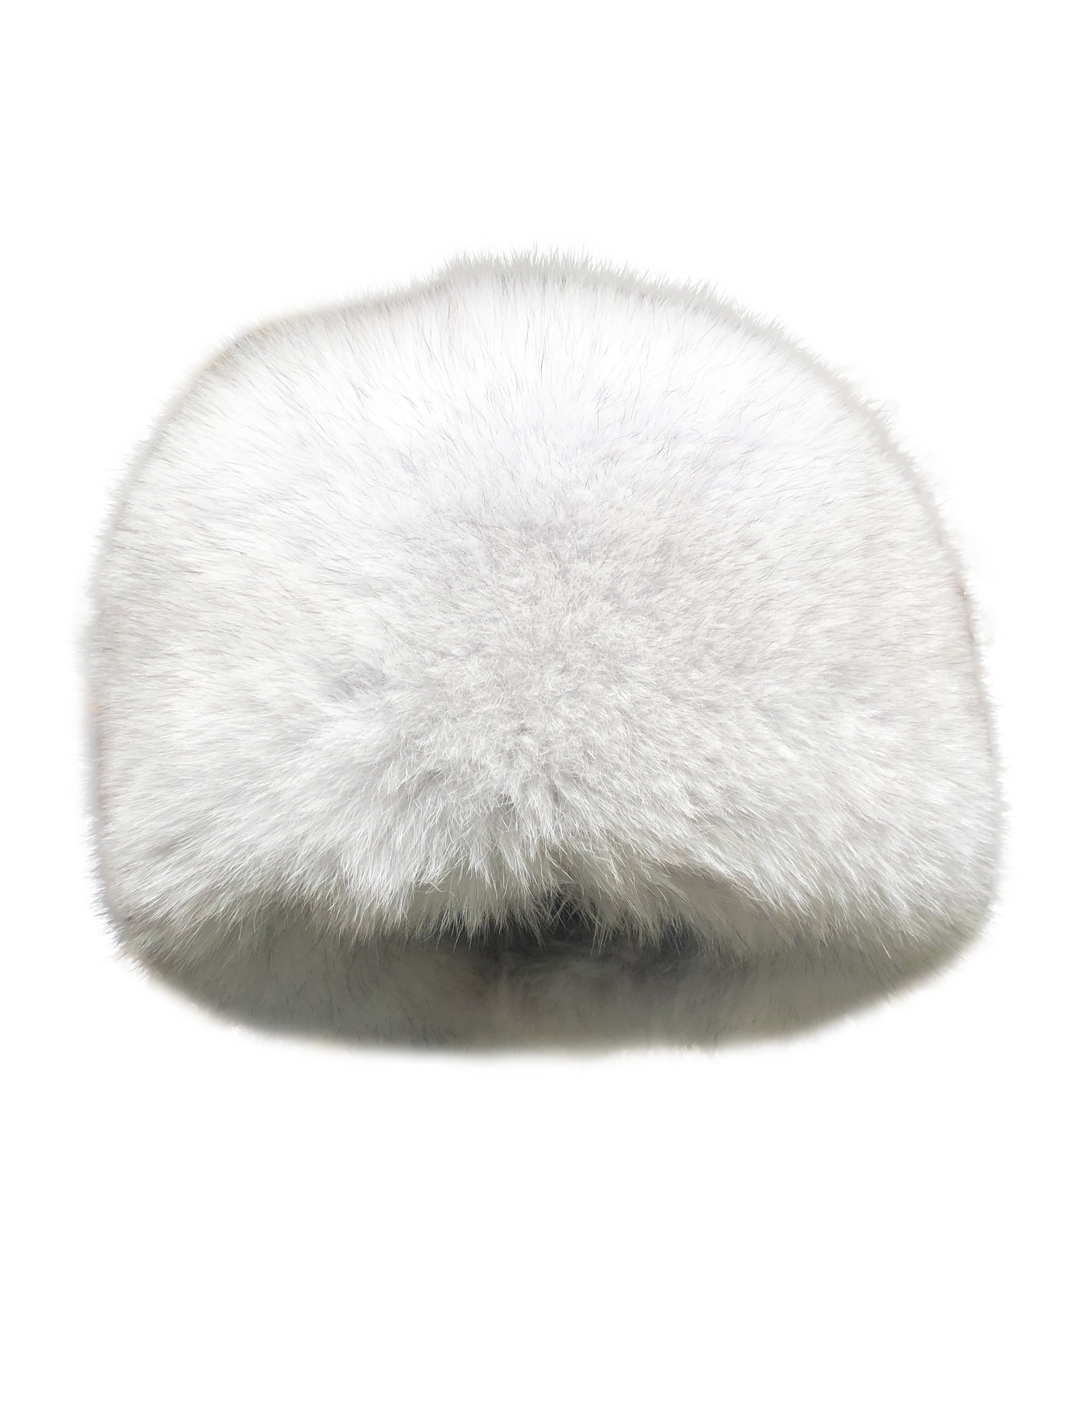 HL22C049 - Cossack ræve hat- Dame - Blå/hvid